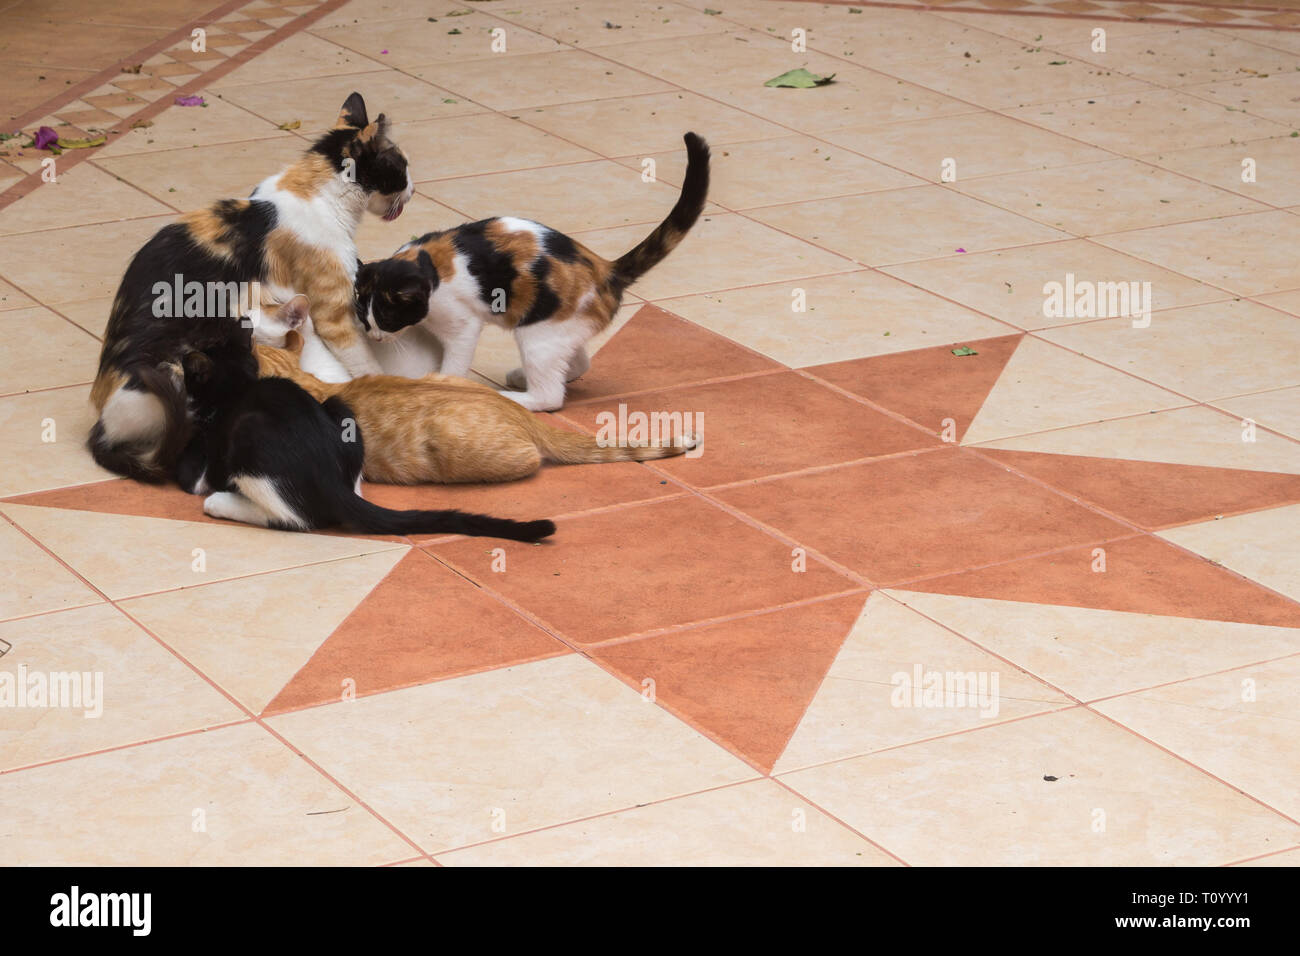 Patio de una casa con piso de baldosas con una forma de estrella. Familia de gatos, la madre y el gatito de diversos colores. Rethymno, Creta, Grecia. Foto de stock